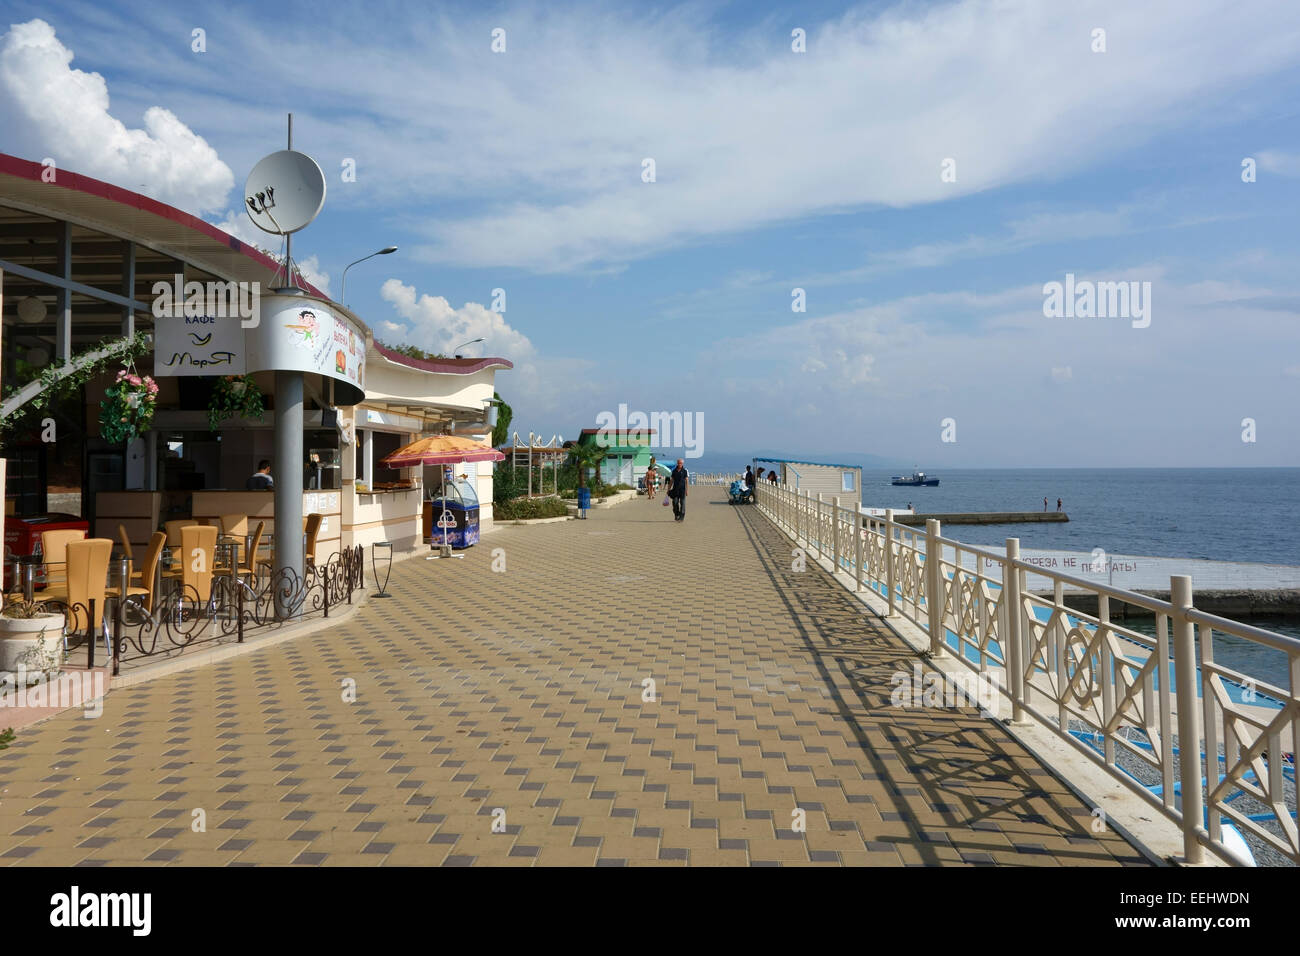 Promenade along waterfront in the resort town of Alushta, Crimea, Russia Stock Photo